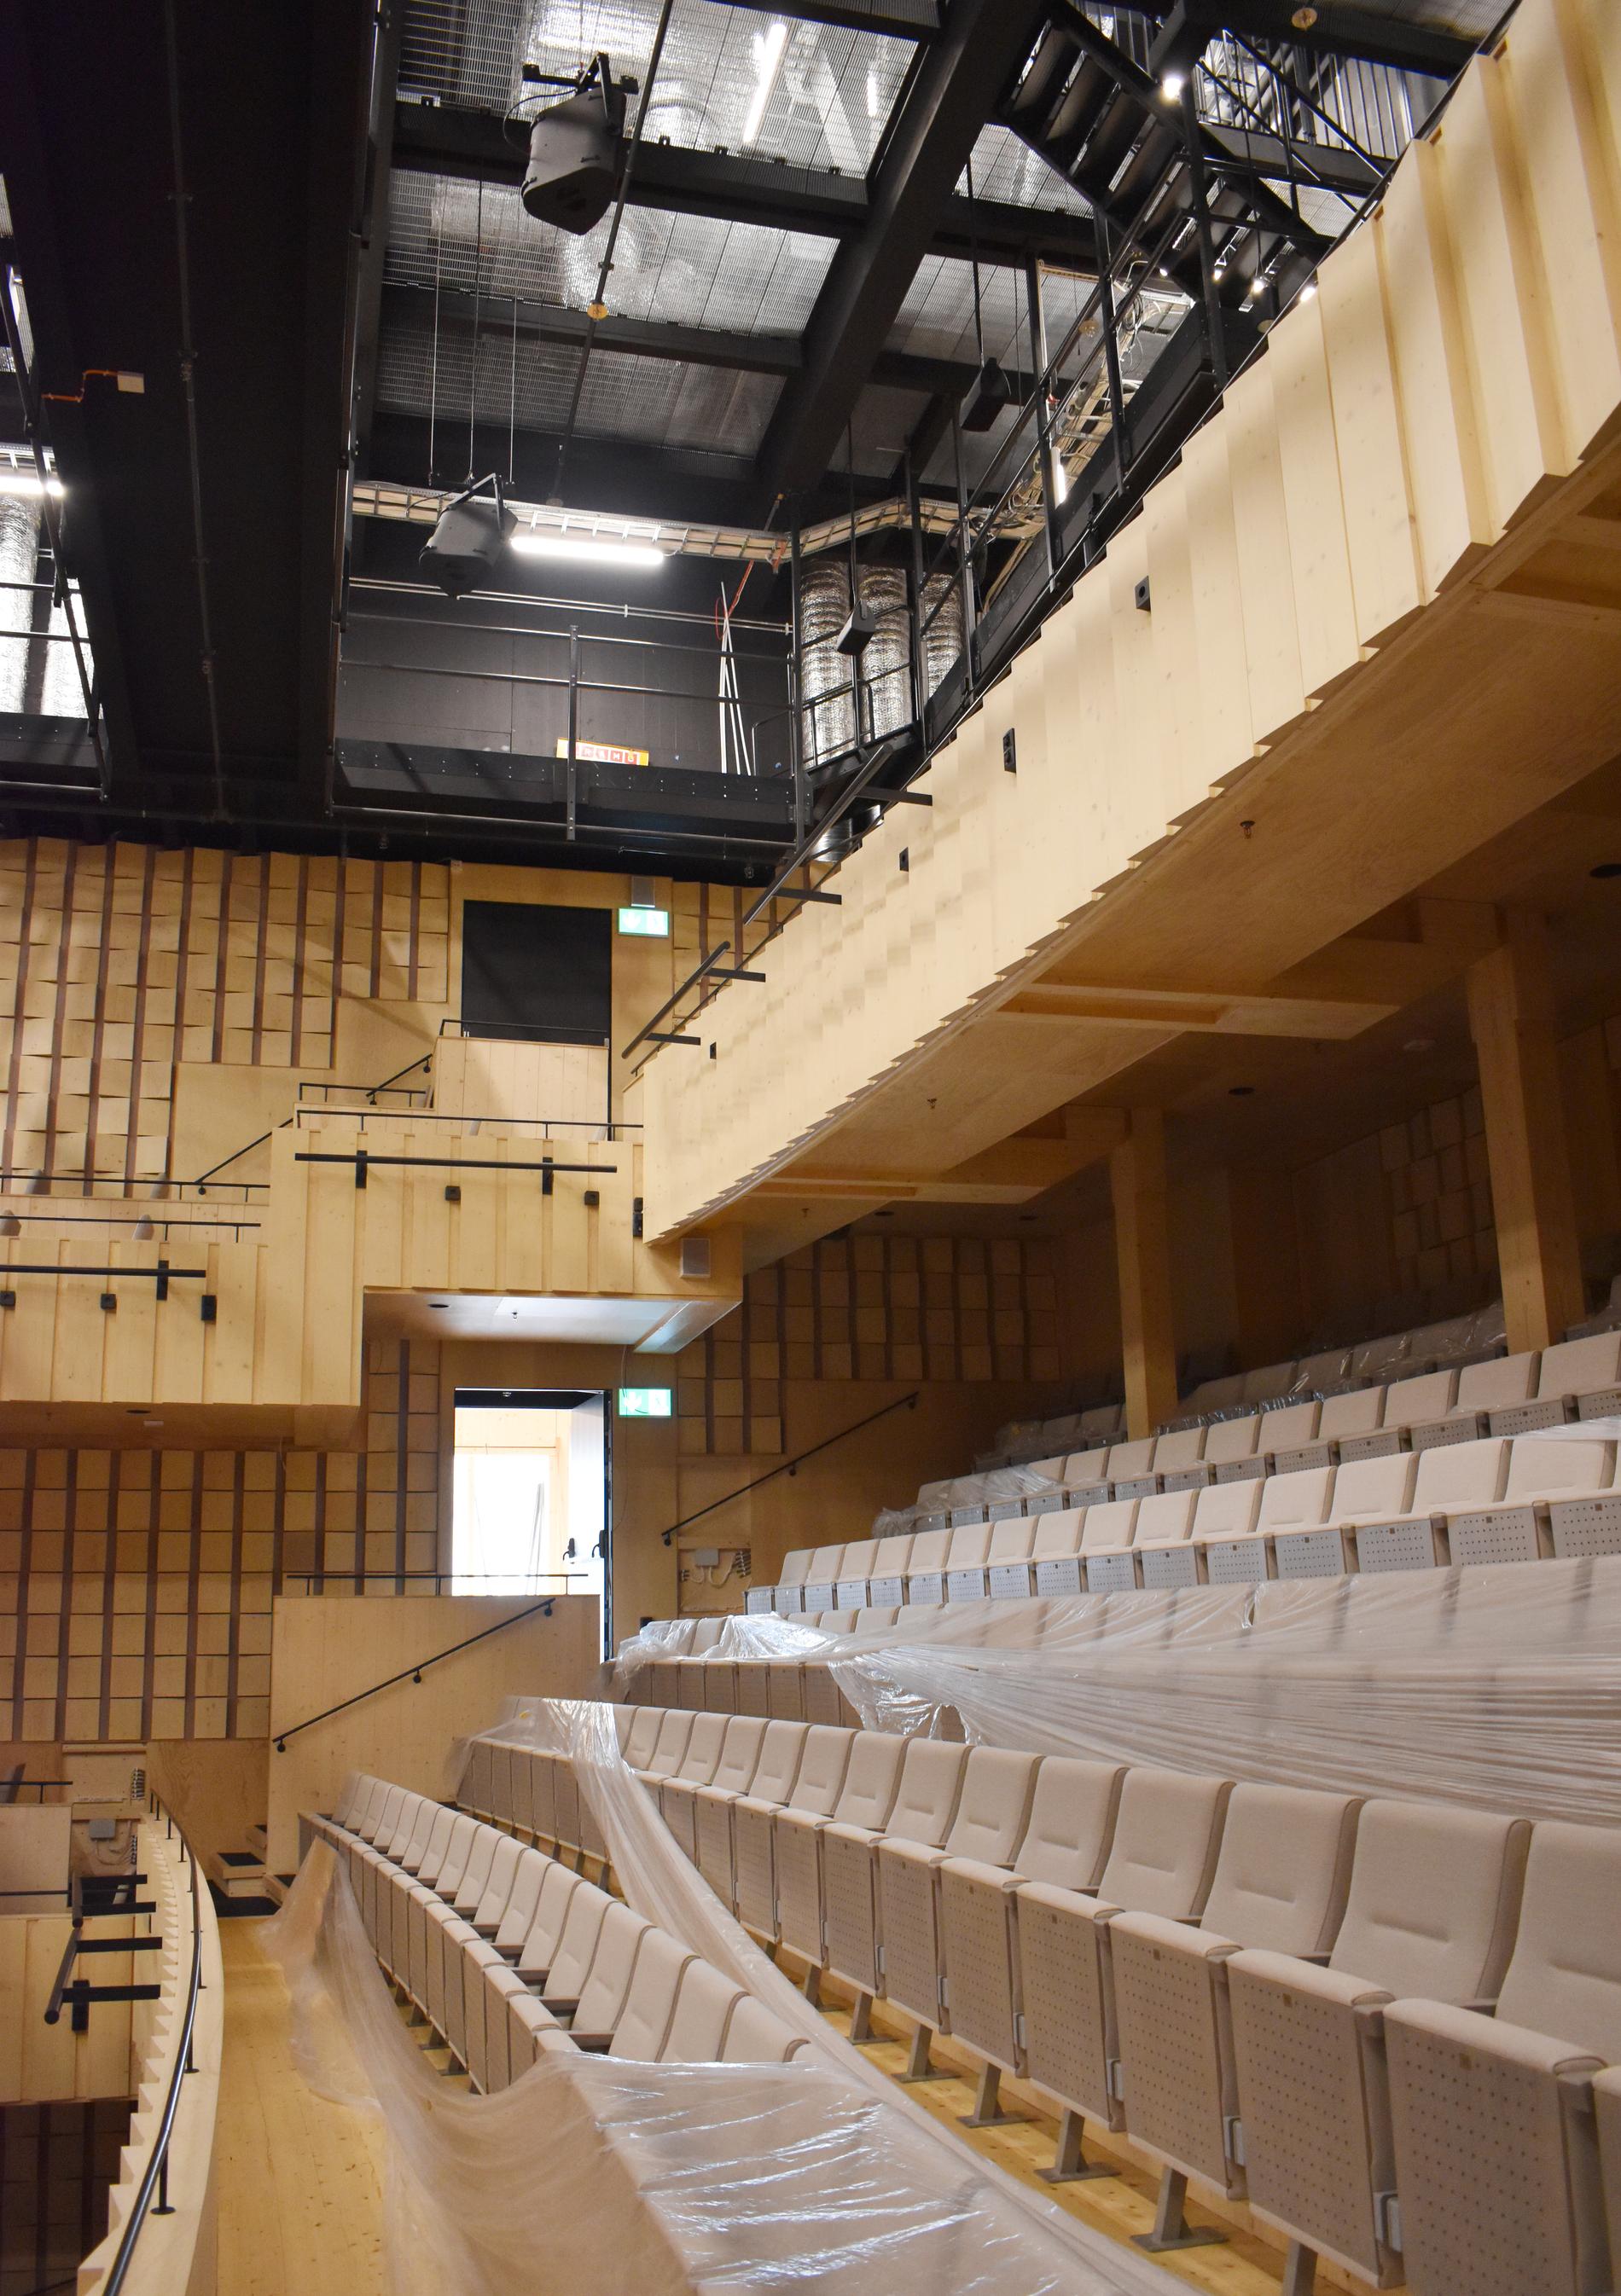 Stora konsertsalen har nästan overkligt högt i tak. De små, vinklade plattorna på väggarna sitter där för att förbättra akustiken.